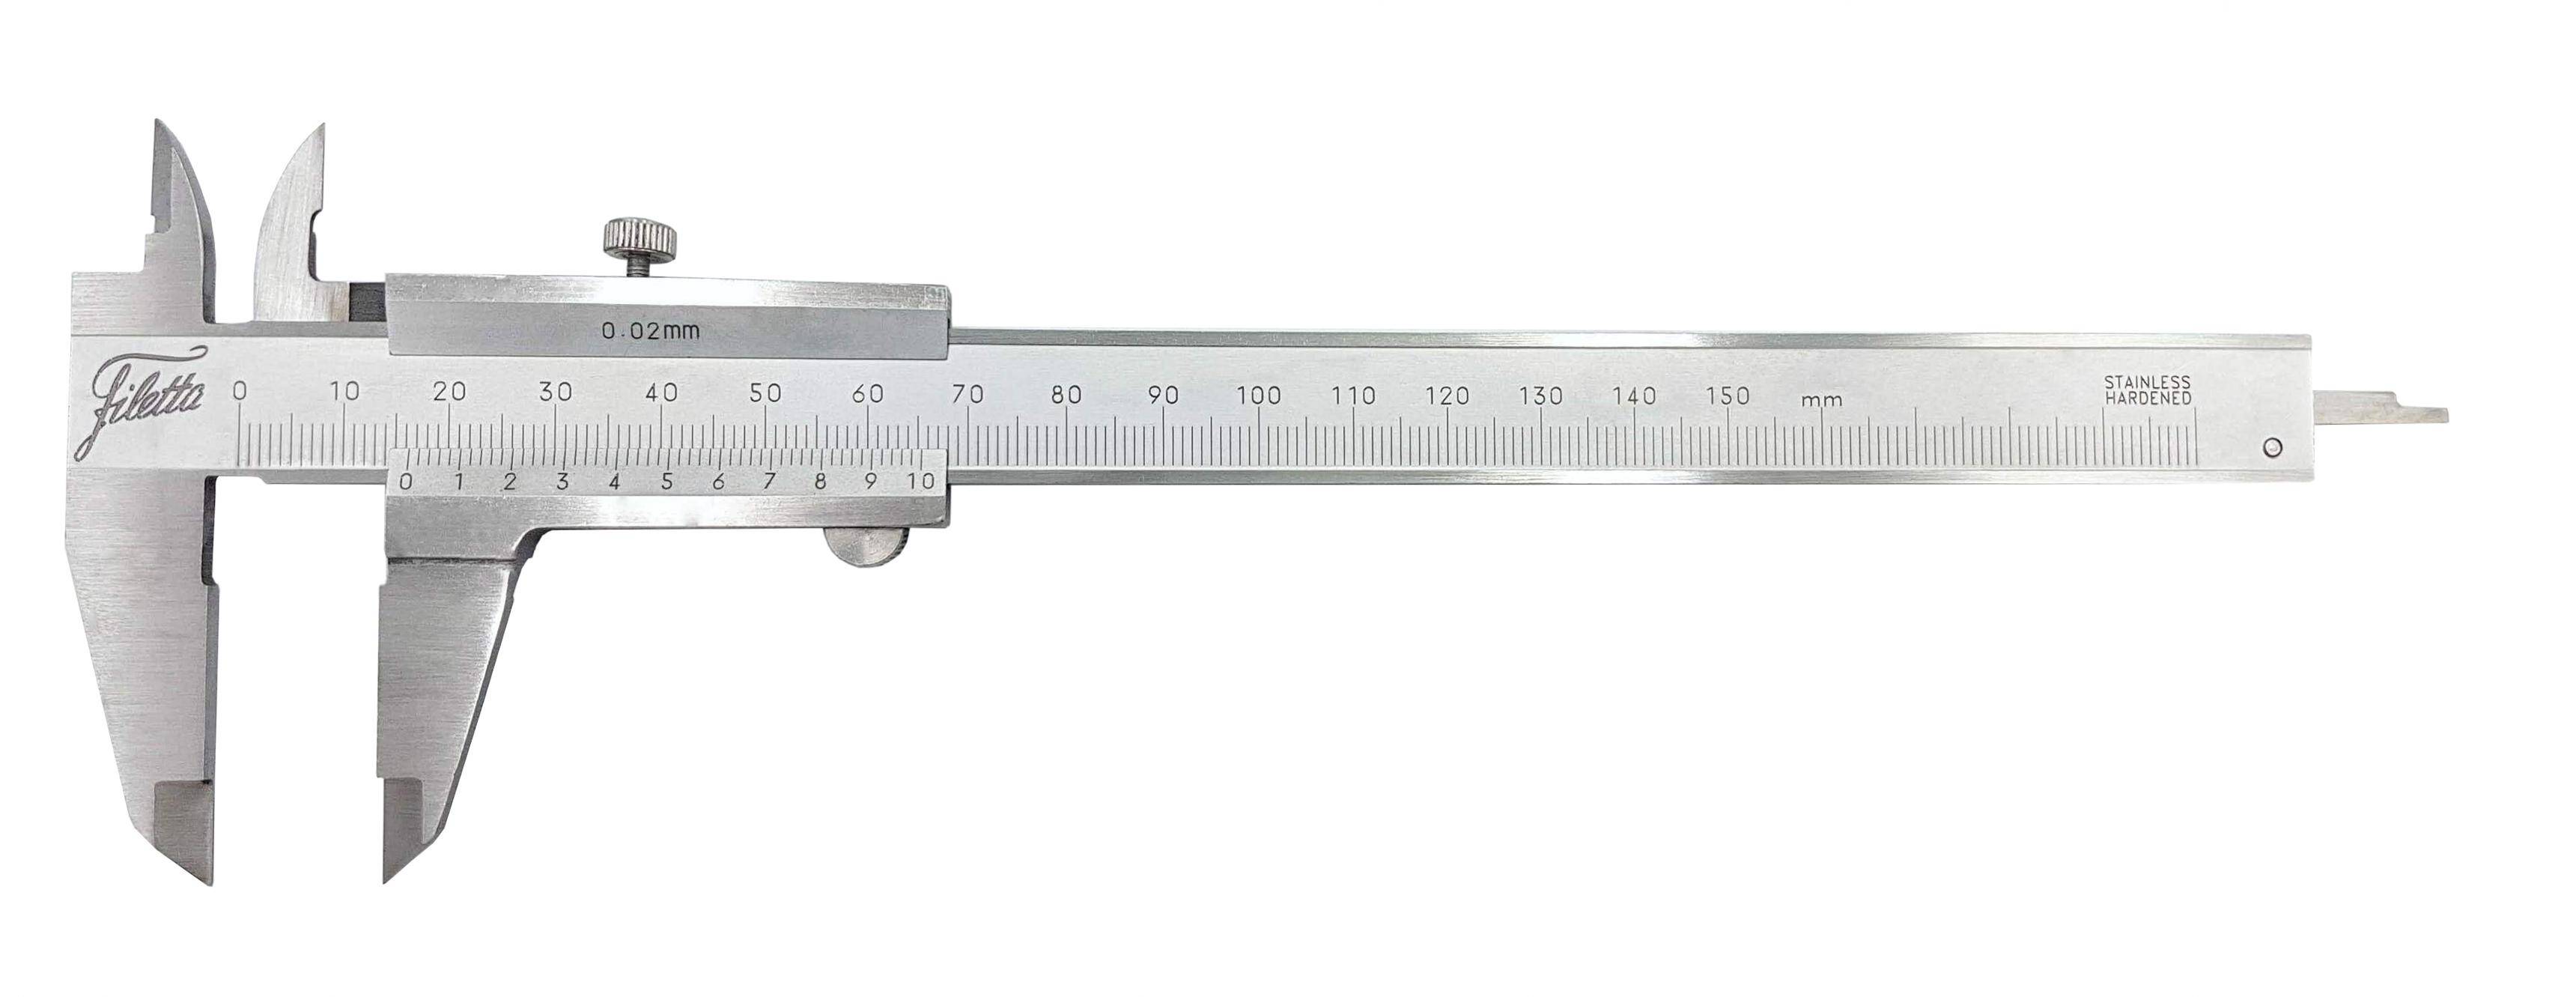 SCHUT suwmiarka analogowa 150/0.02 mm + świadectwo wzorcowania 909.541 WZORC (Zdjęcie 3)